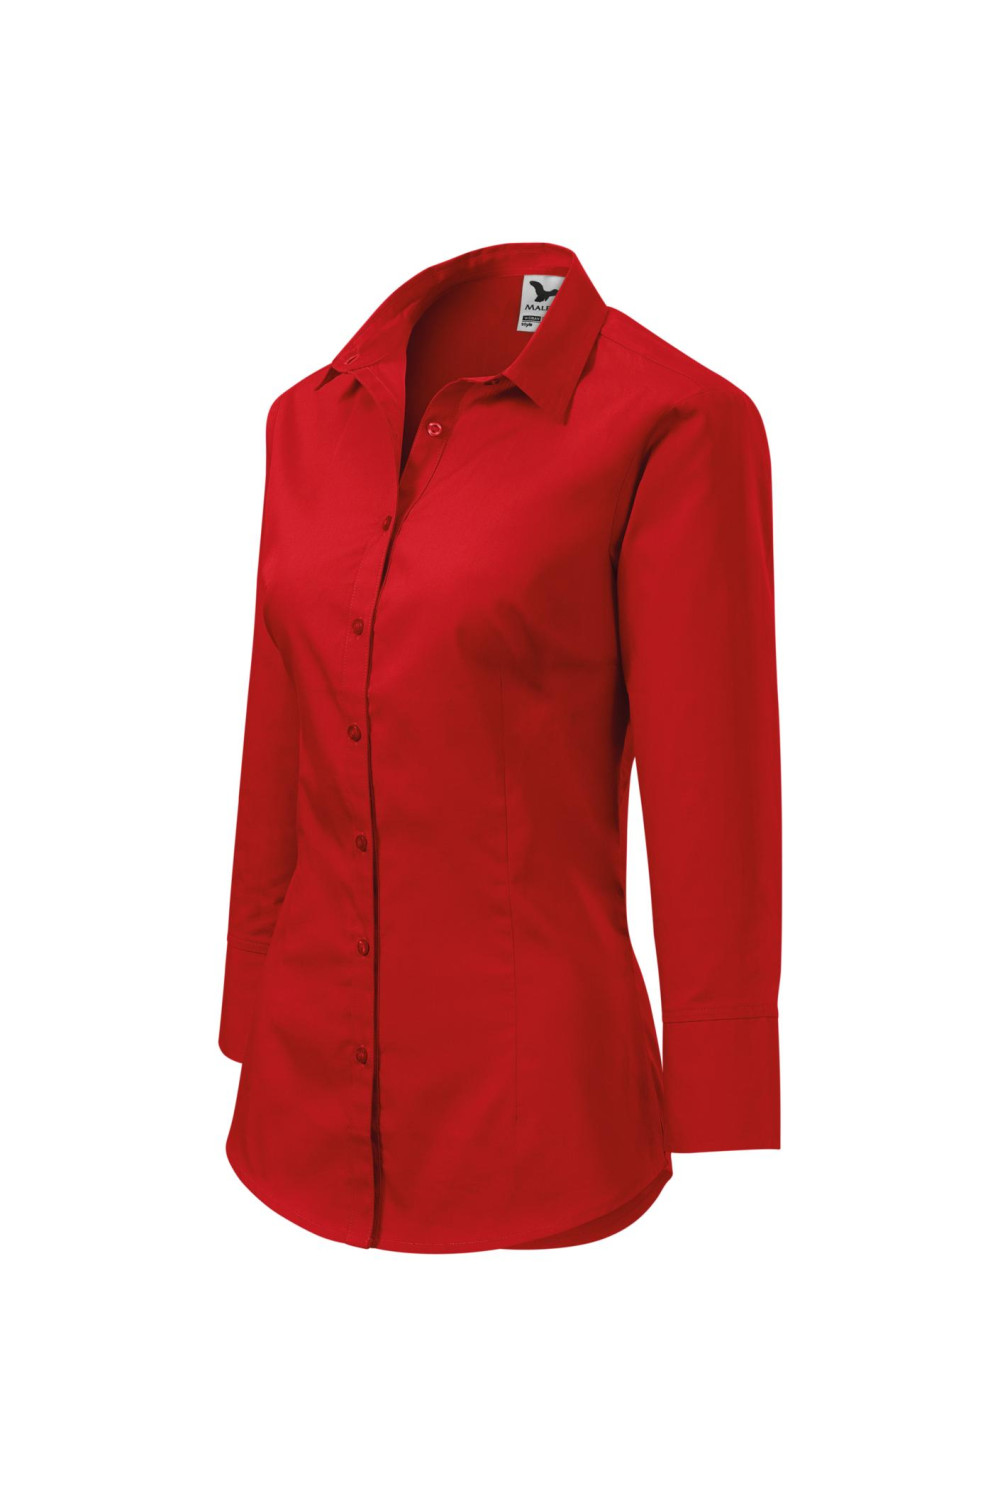 Koszula damska , rękaw 3/4, 100% bawełna, kelnerska, wizytowa STYLE 218 koszule czerwony